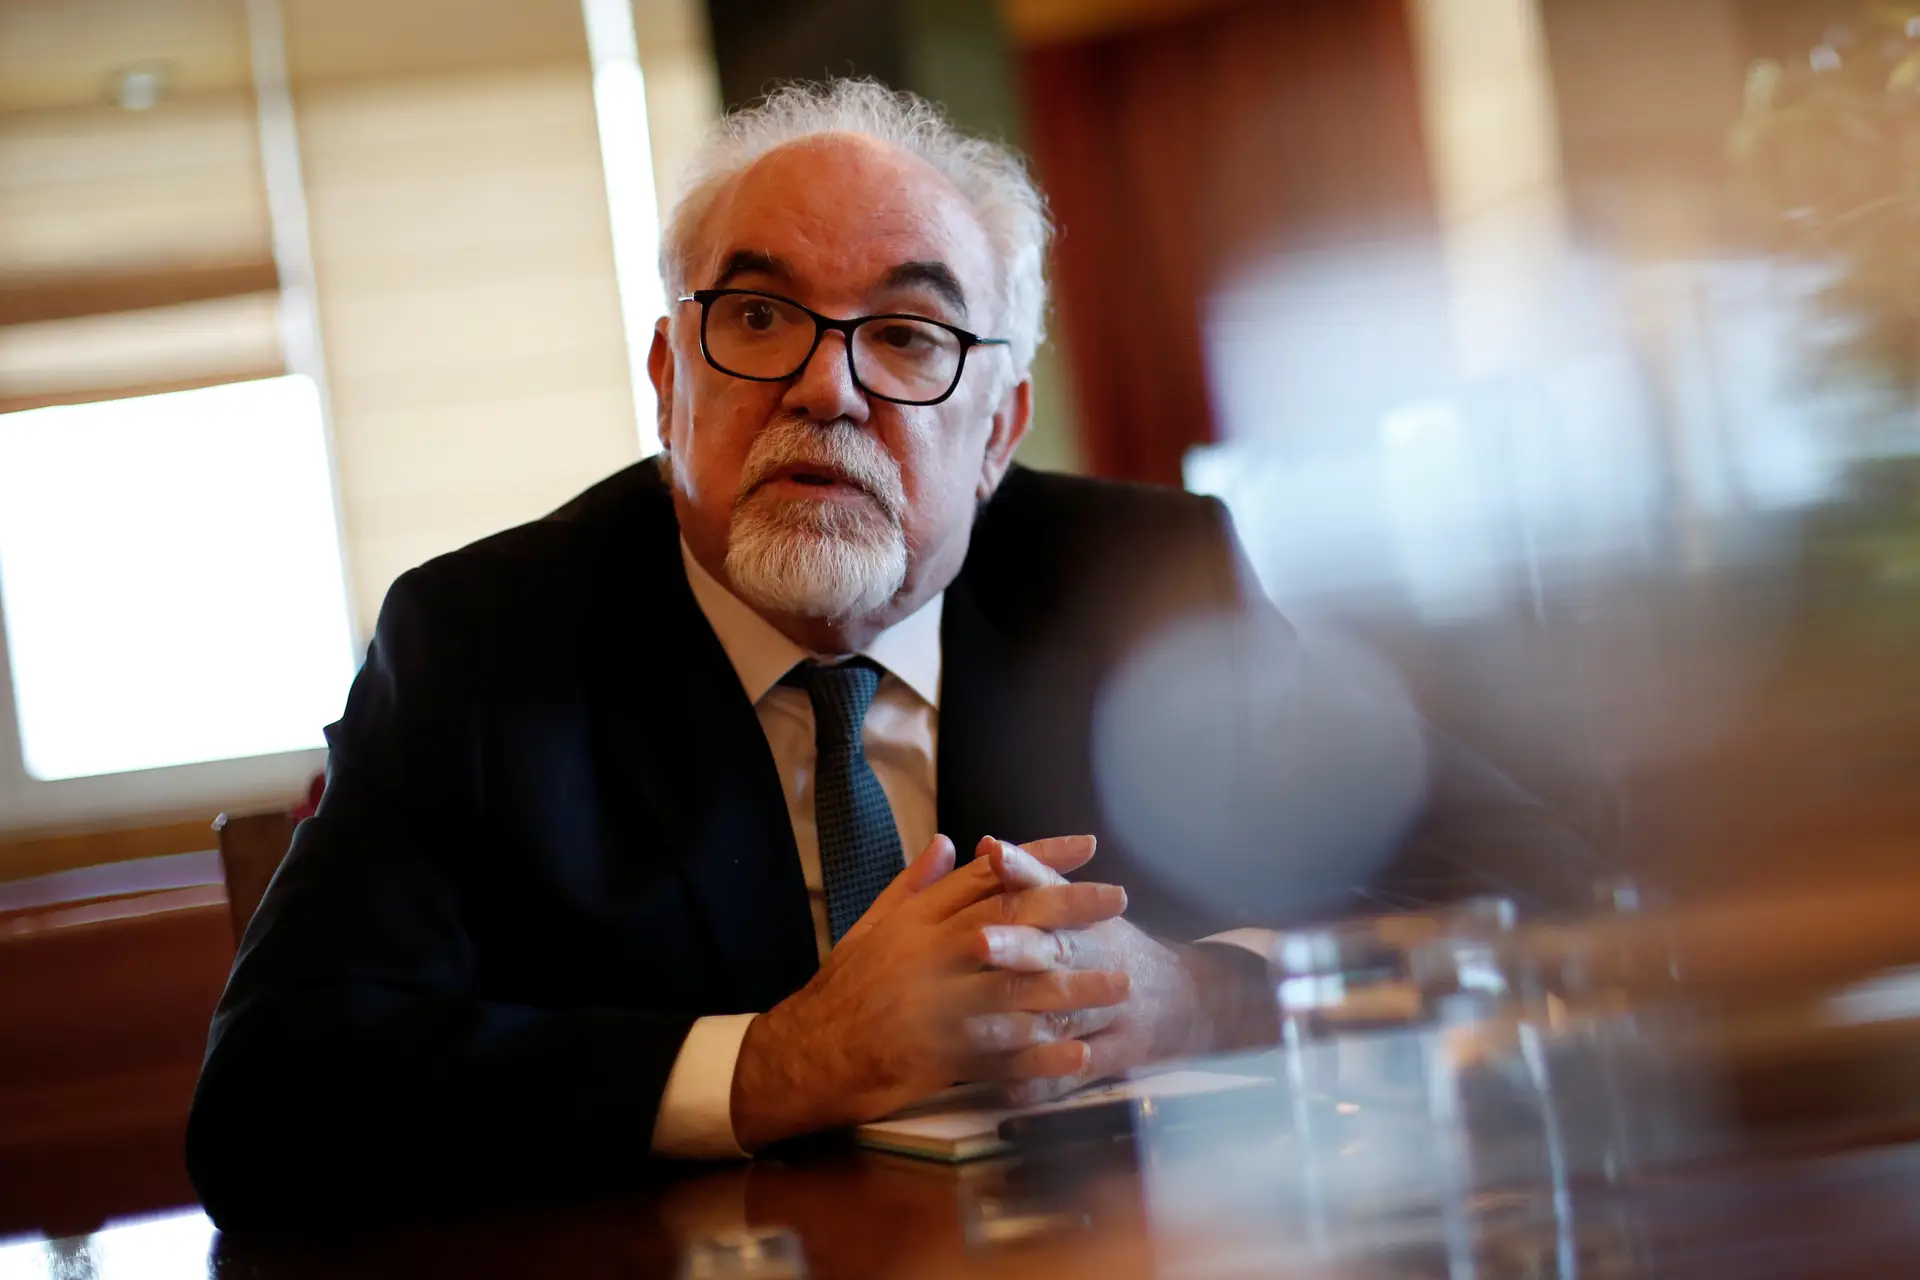 Governo vai repor aumentos das pensões em 2024? “Tenho confiança”, “creio que é possível”, diz Vieira da Silva